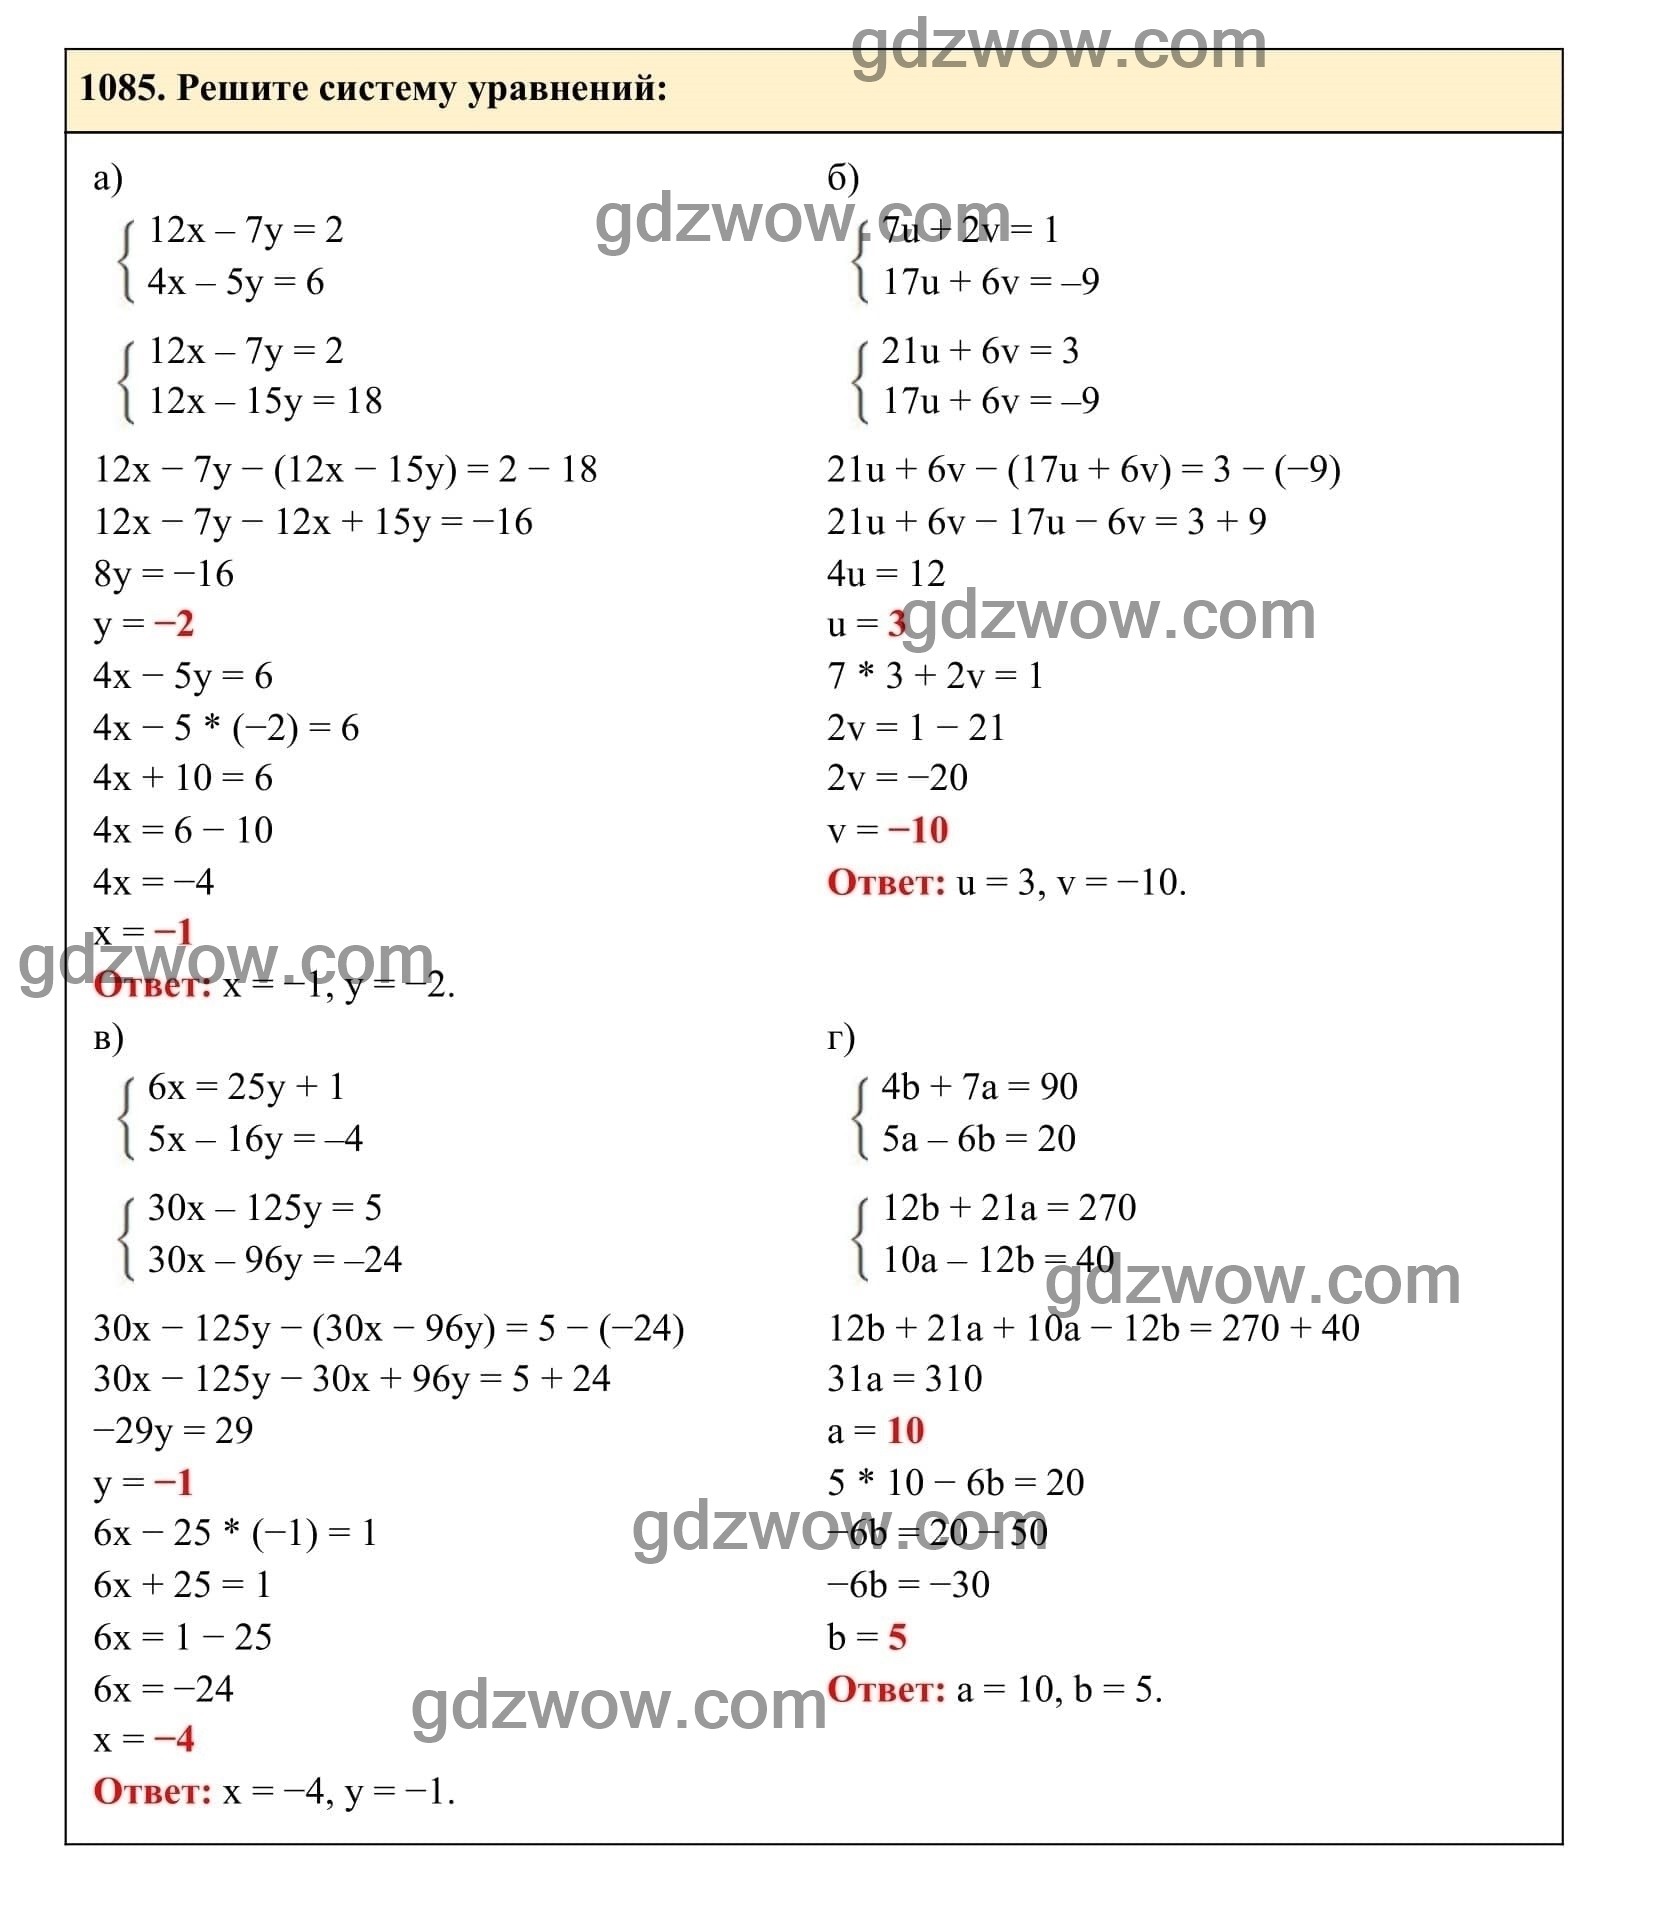 Упражнение 1085 - ГДЗ по Алгебре 7 класс Учебник Макарычев (решебник) - GDZwow